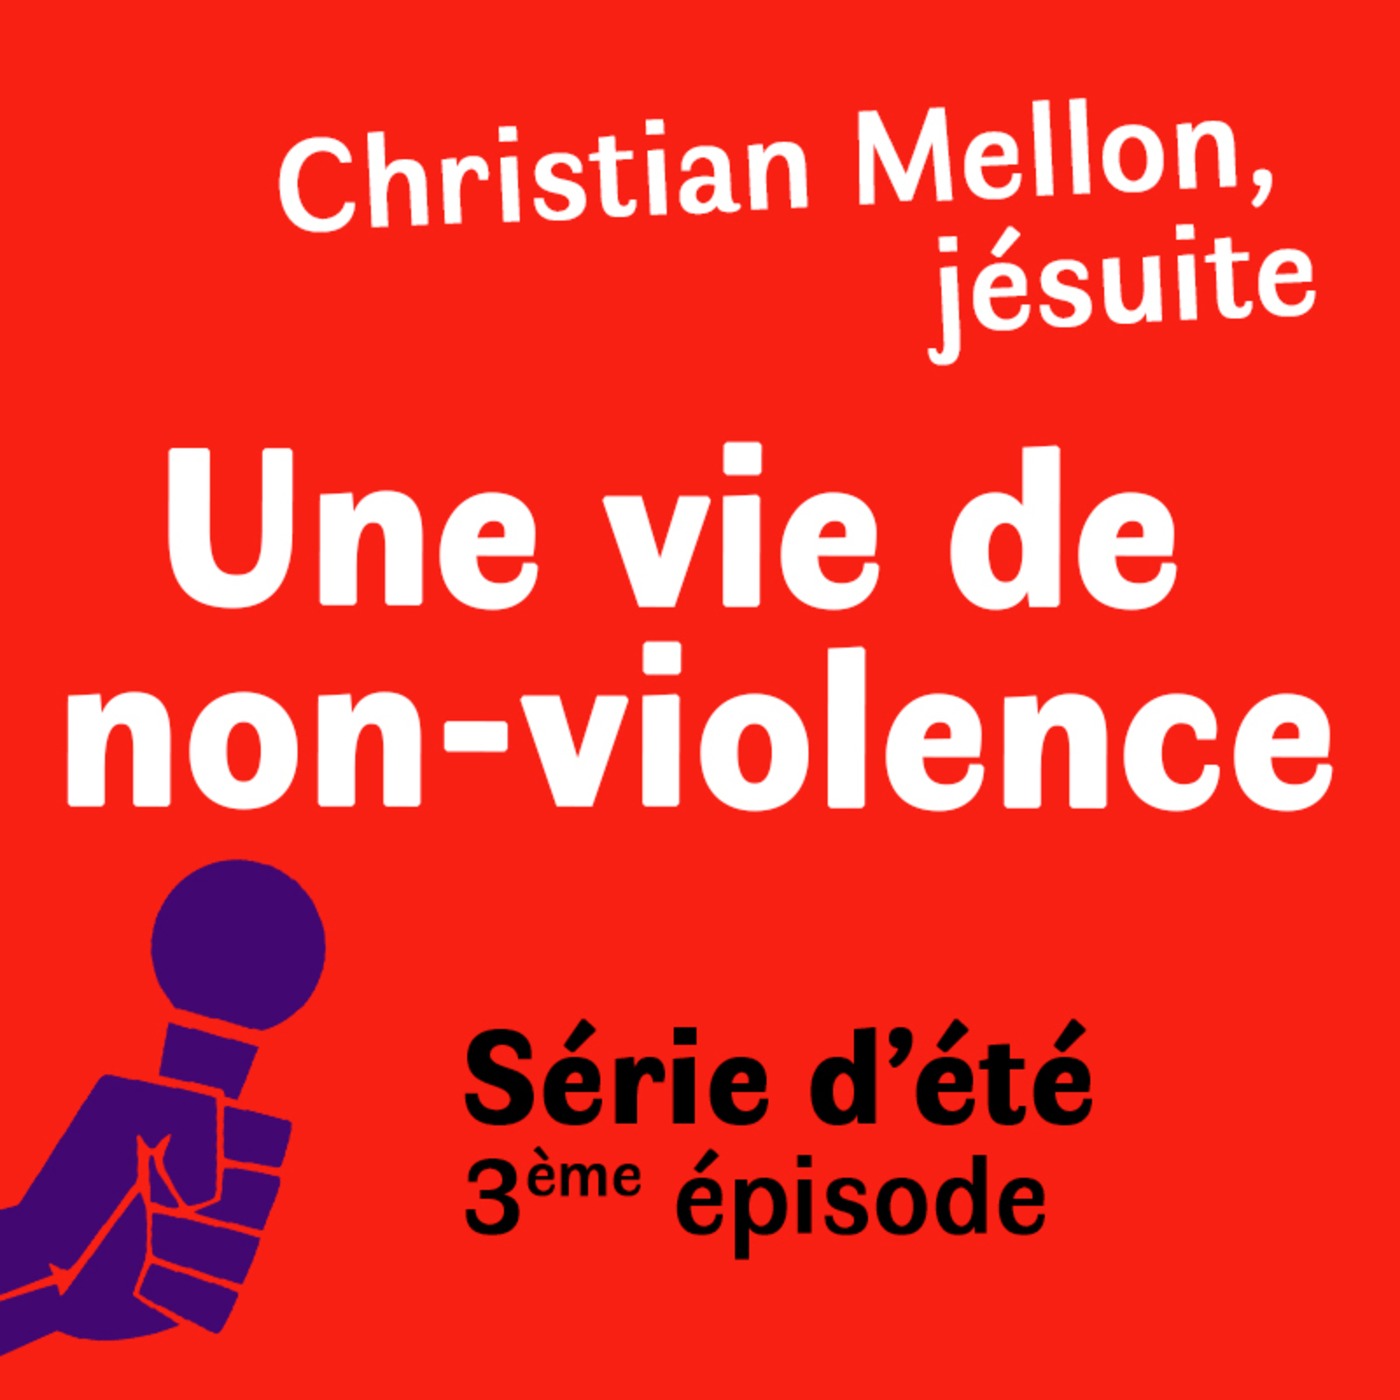 Série d'été : Christian Mellon, jésuite, une vie de non violence. Episode 3 : On traverse le rideau de fer